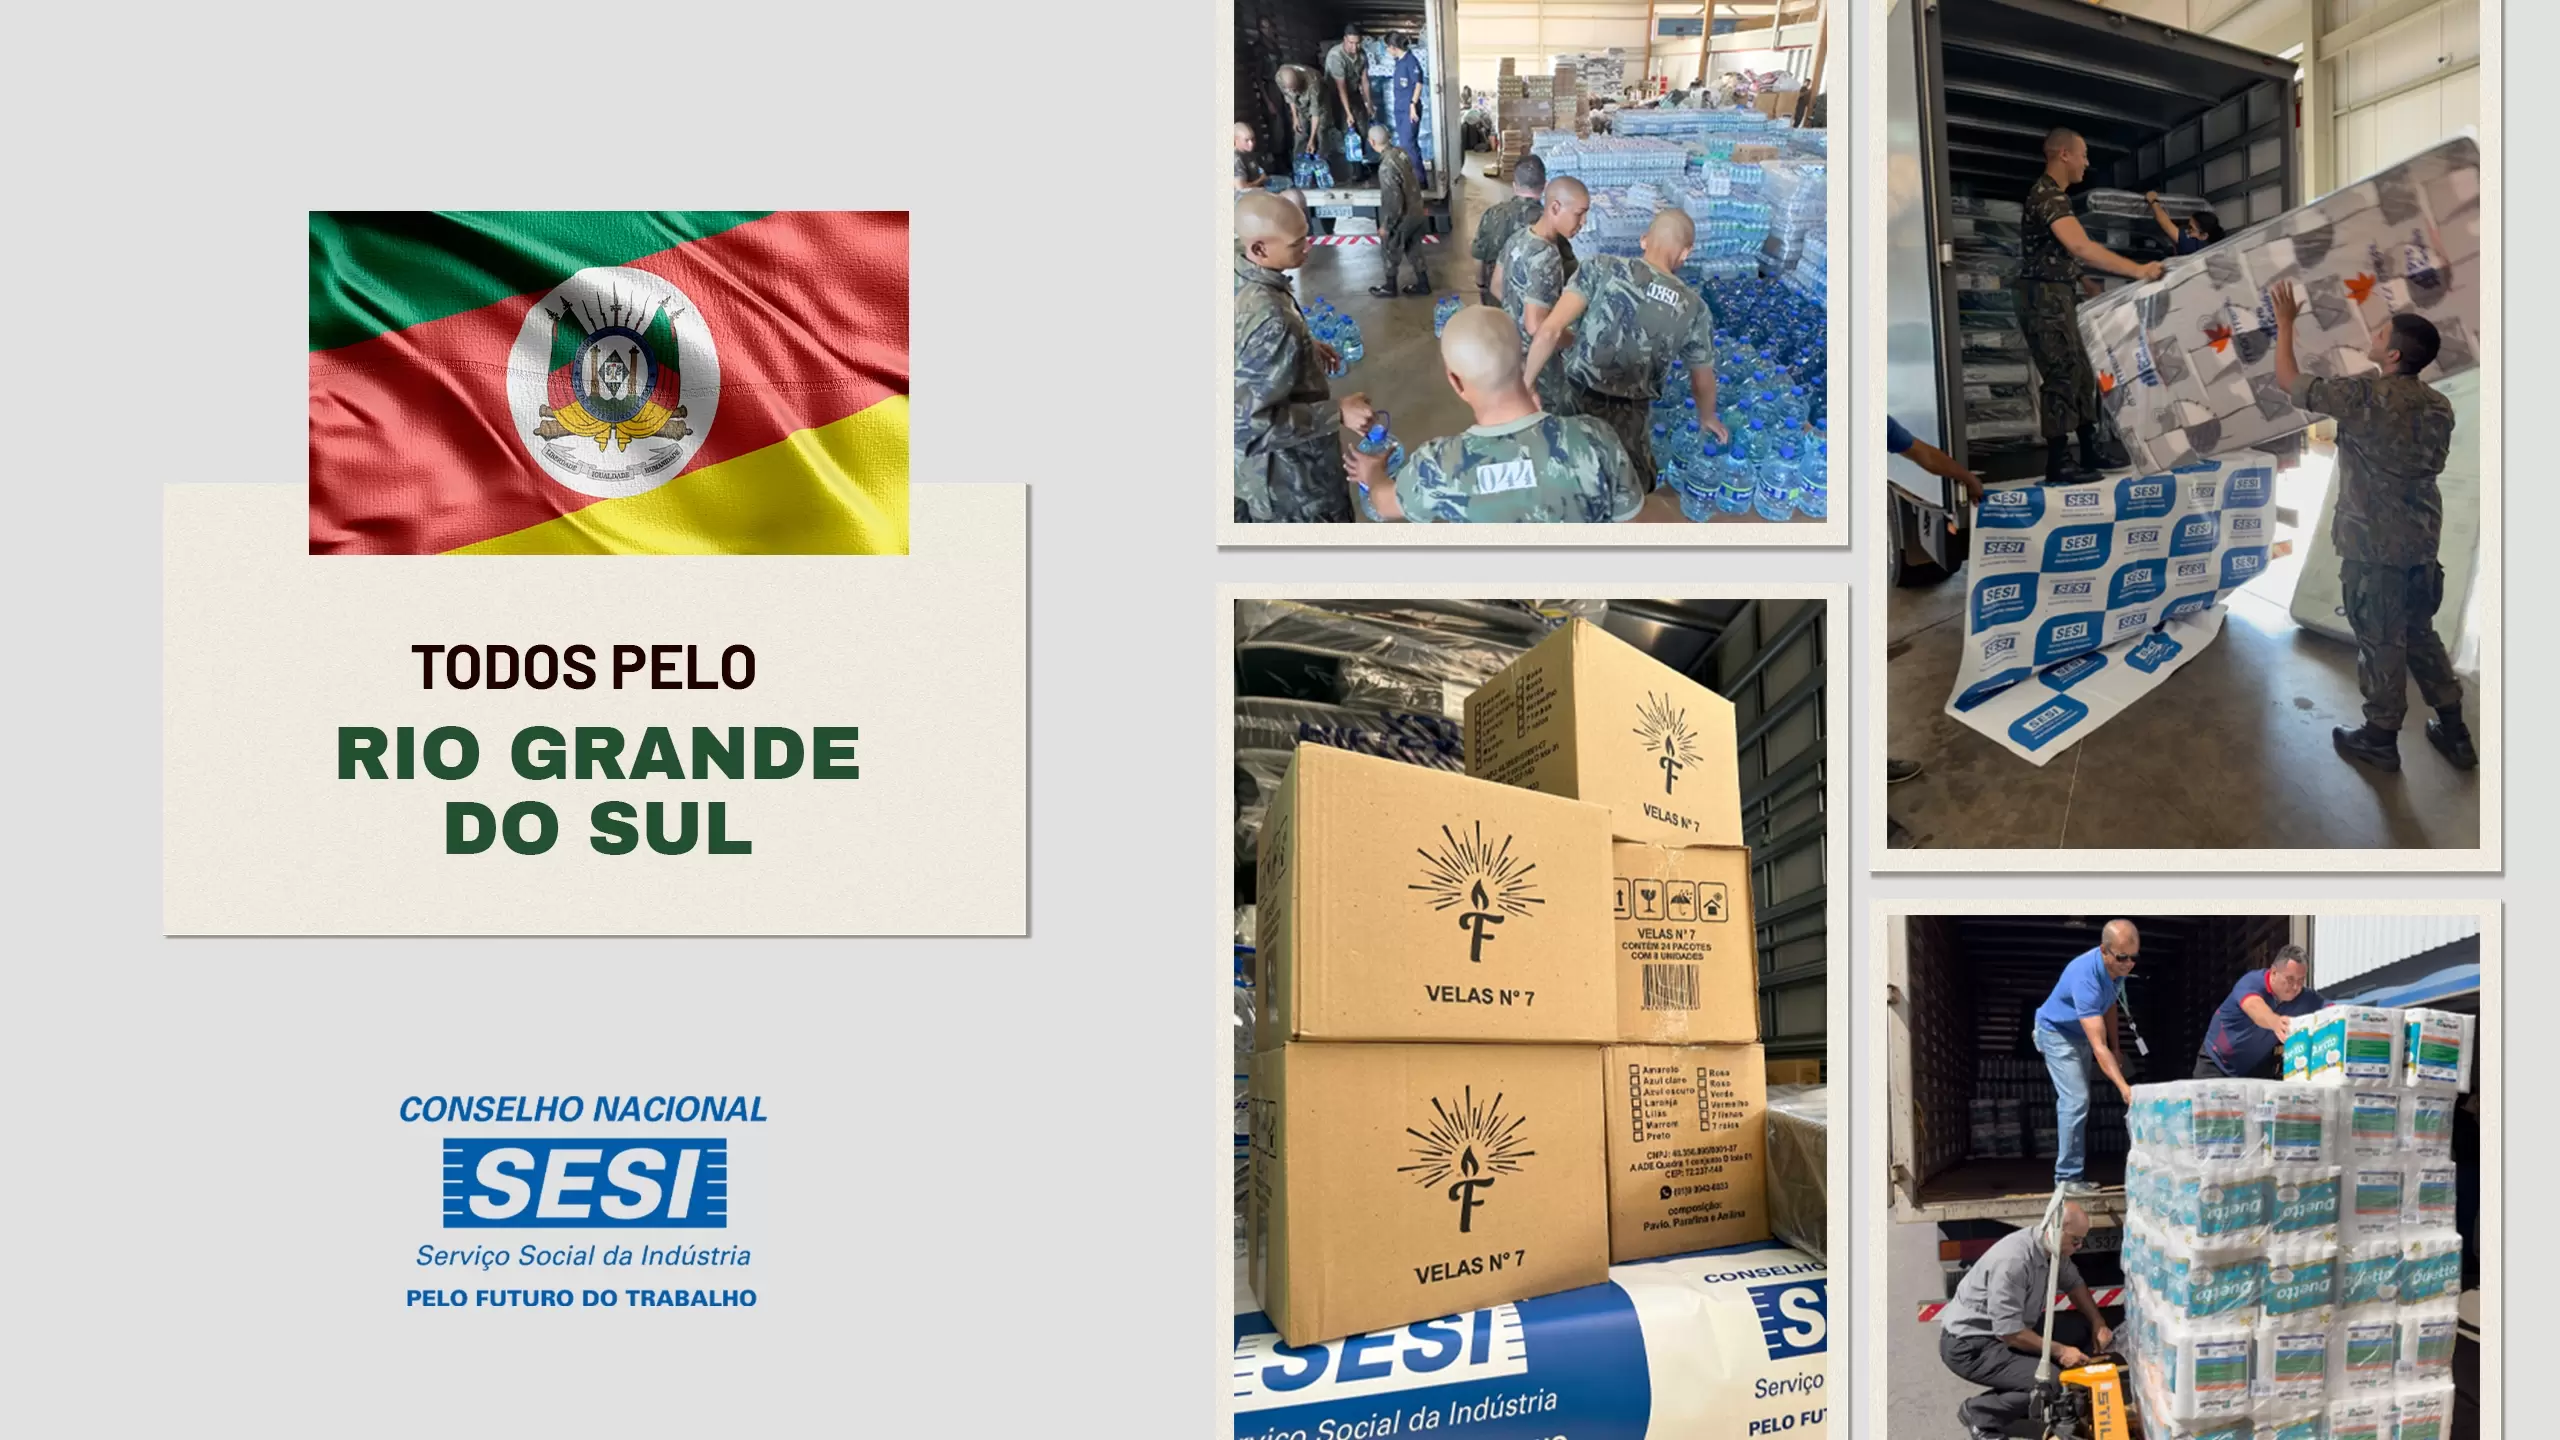 Solidariedade em Ação: CN-SESI e FIBRA unem forças para auxiliar vítimas das enchentes no Rio Grande do Sul